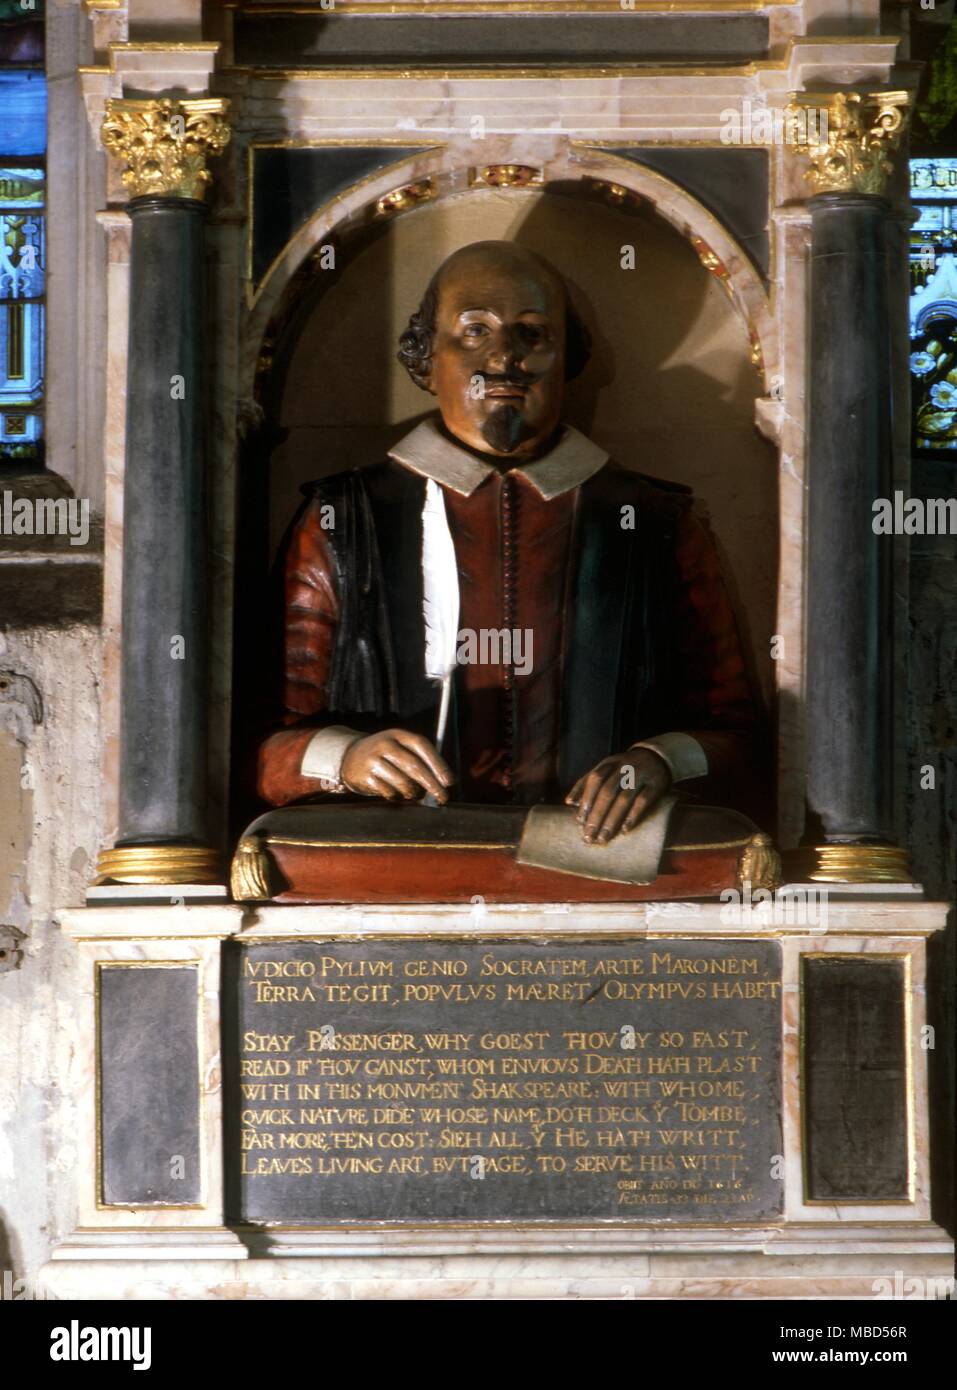 Portrait von Shakespeare aus der Gedenkstätte in der Kirche von Stratford-on-Avon. Es war bis 1623, dem Jahr der ersten Folio veröffentlicht wurde. Stockfoto